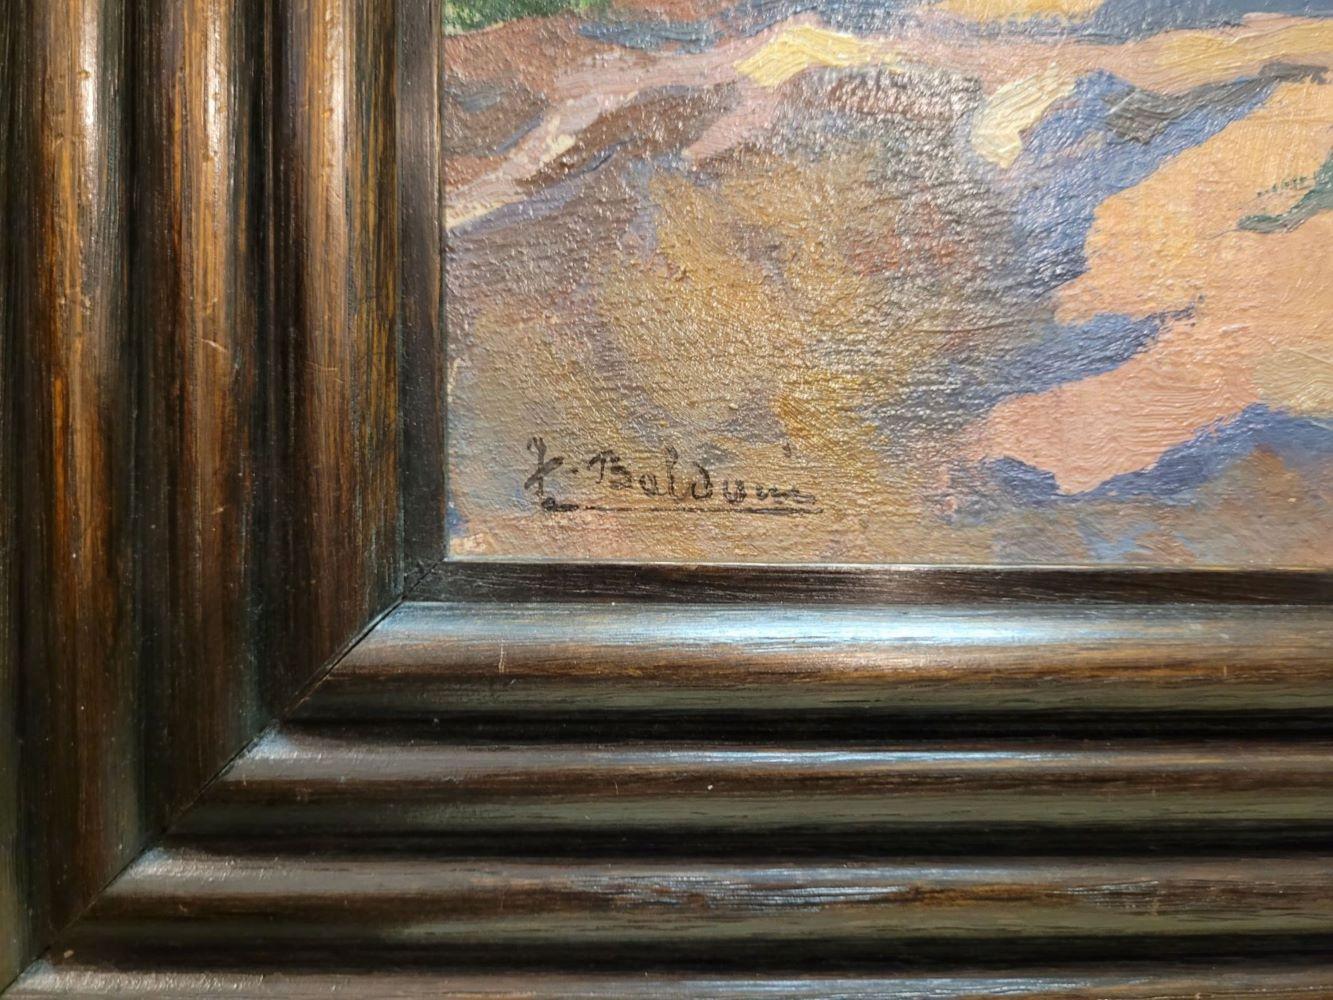 Cadre Art Déco
Dimensions avec cadre 50x62.5 cm
Provenance : Collection particulière, France

BIOGRAPHIE
Jean Baldoui (Paris 1890- Paris 1955) est un peintre orientaliste français, membre de l'Association des peintres et sculpteurs français du Maroc